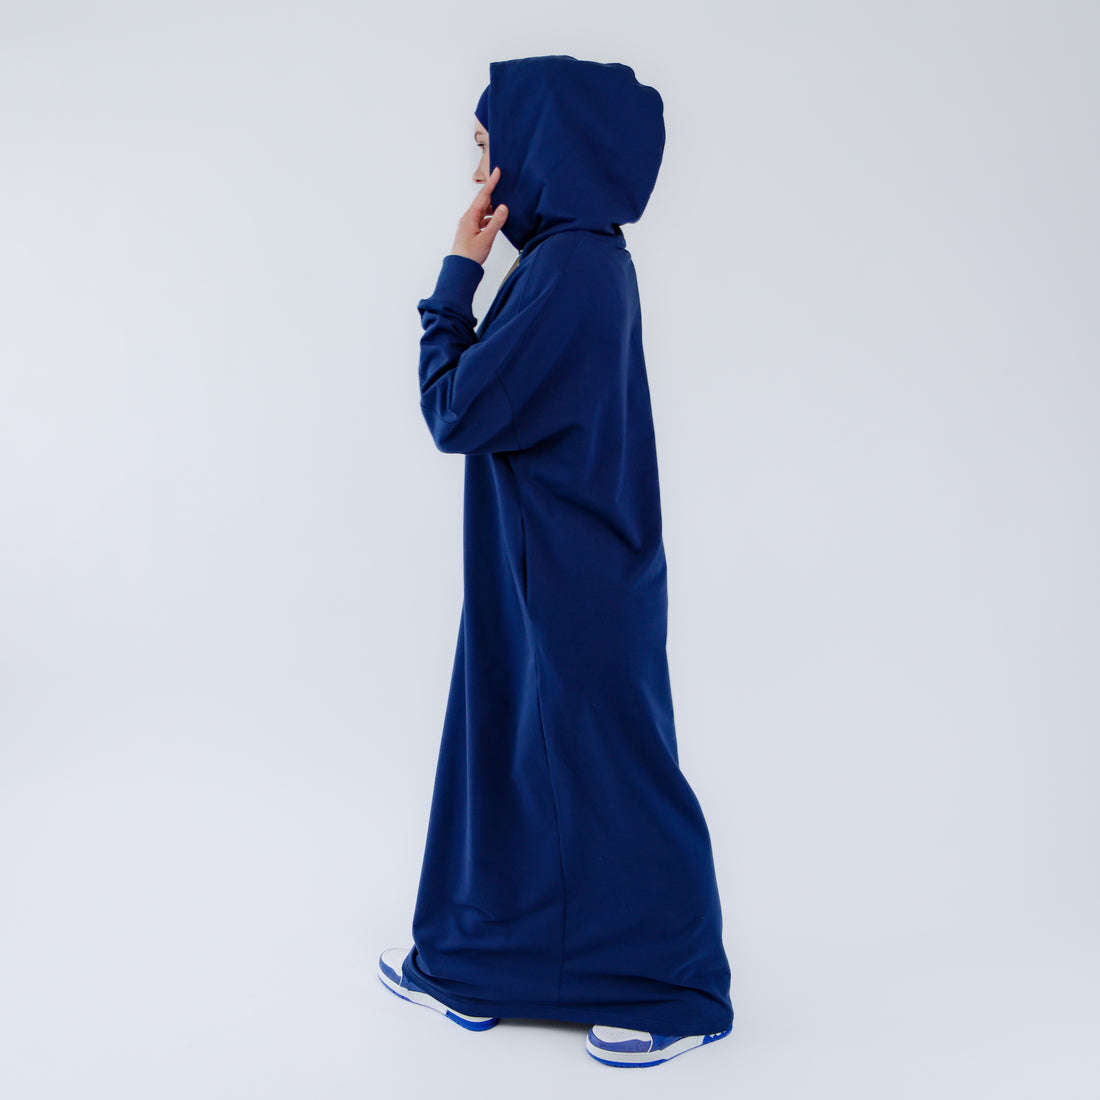 Muslimi maksimekko urheilullisessa abaya - tyylissä - "Indigo Oasis"